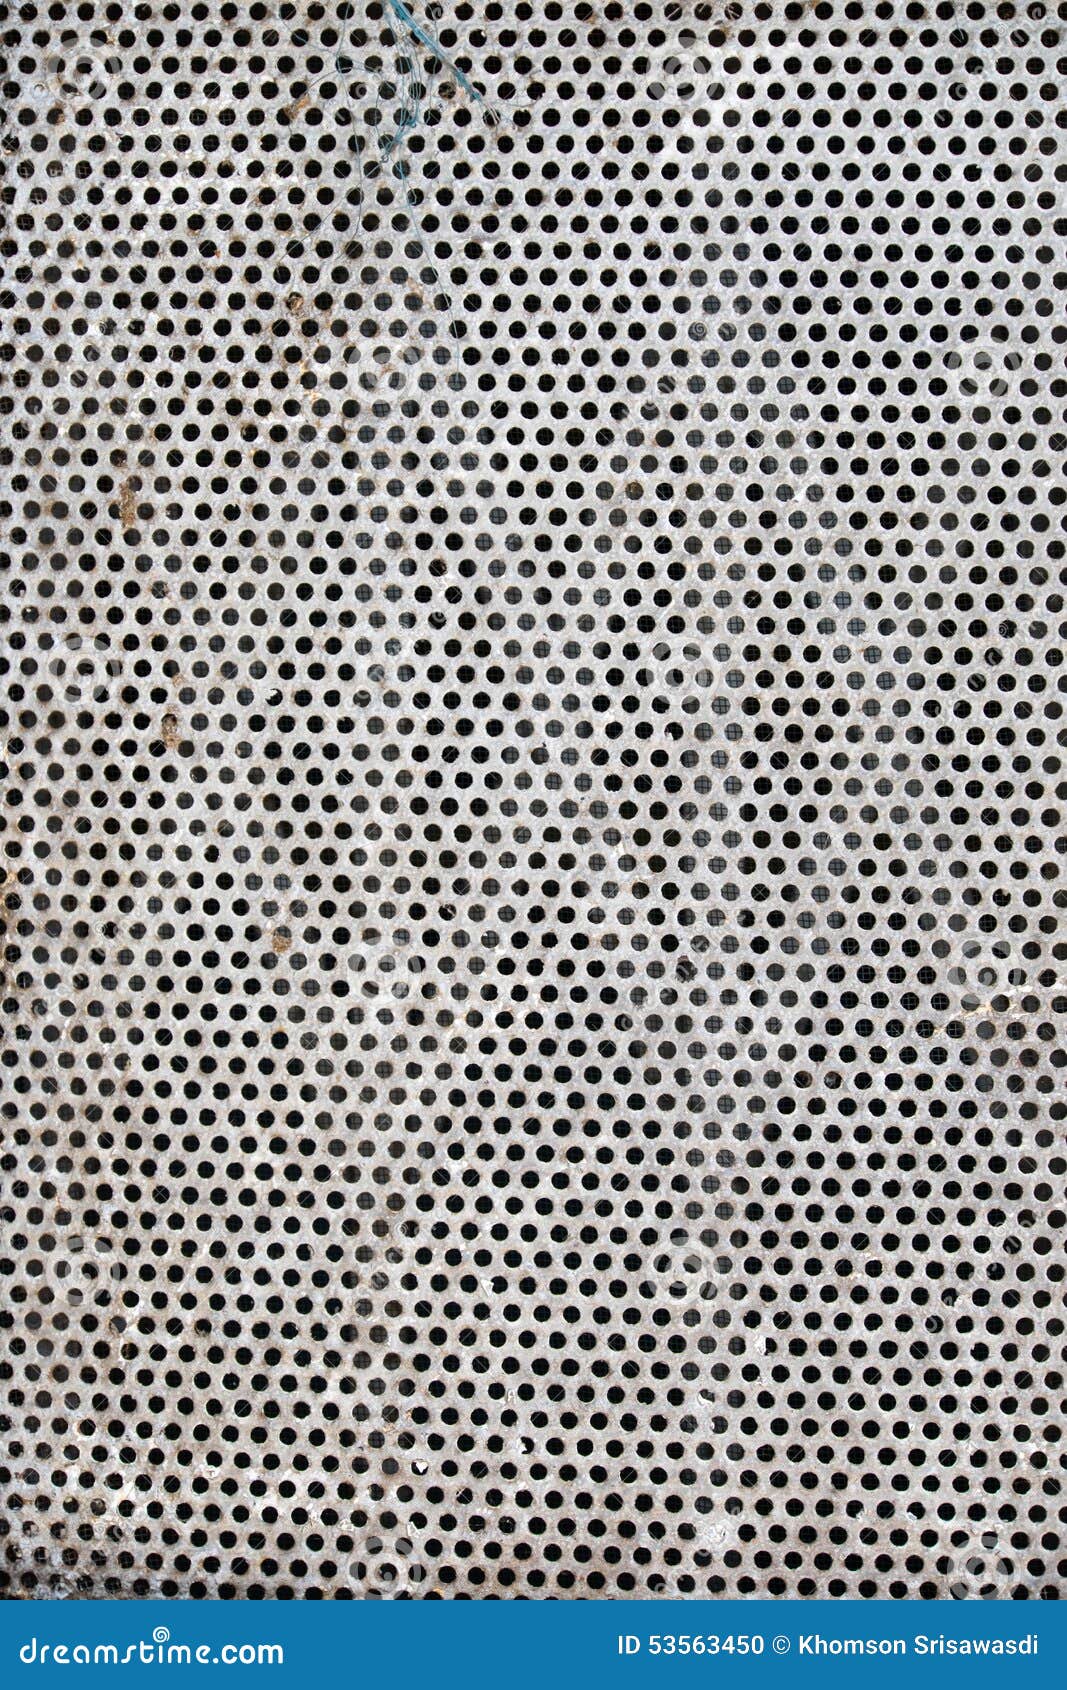 Perforated Metal Sheet Stock Photo Megapixl